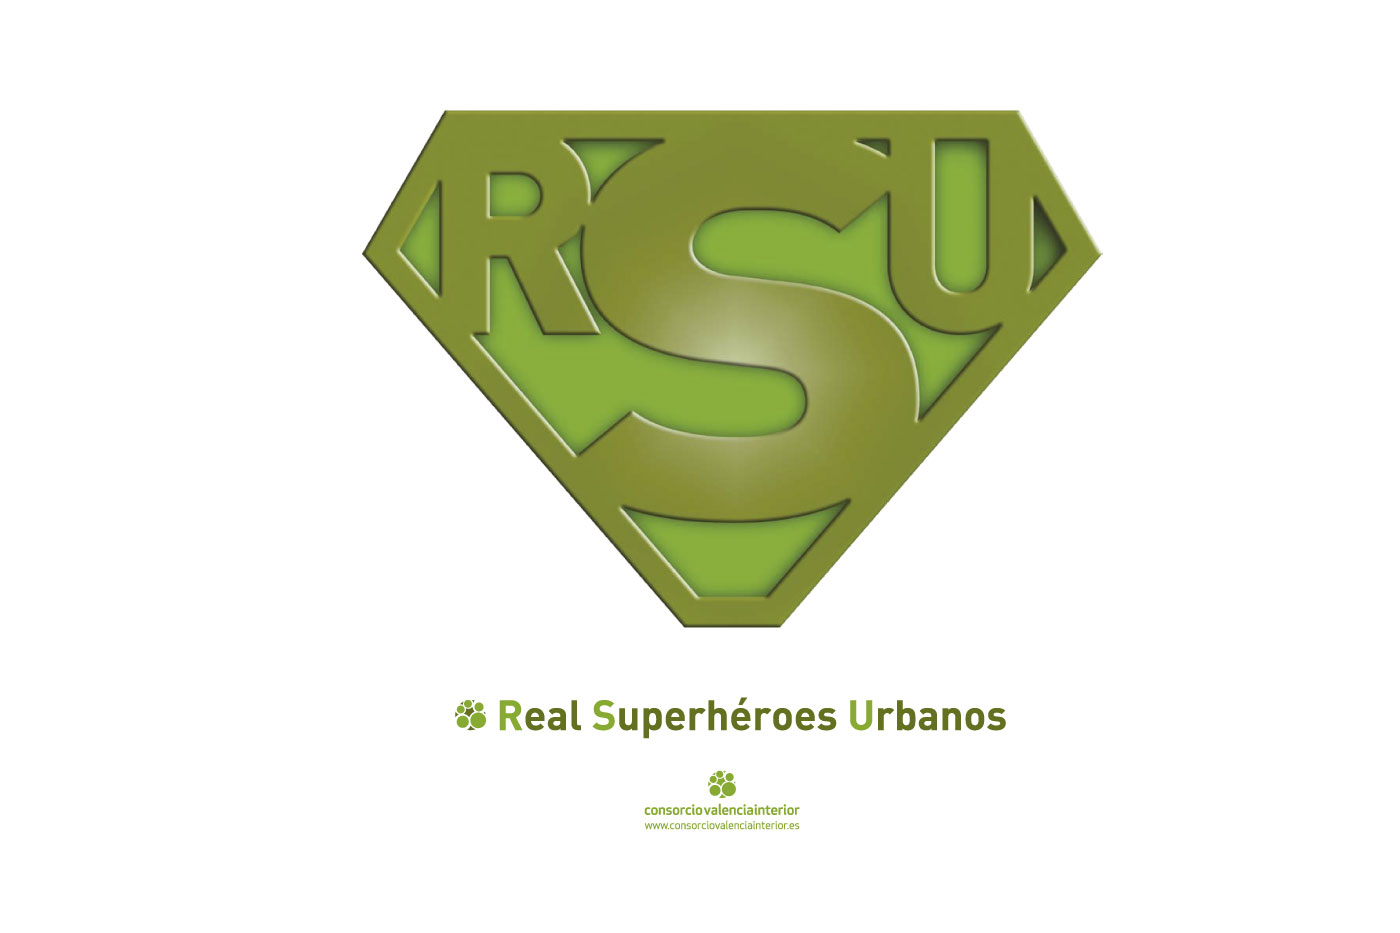 Real Superhéroes Urbanos